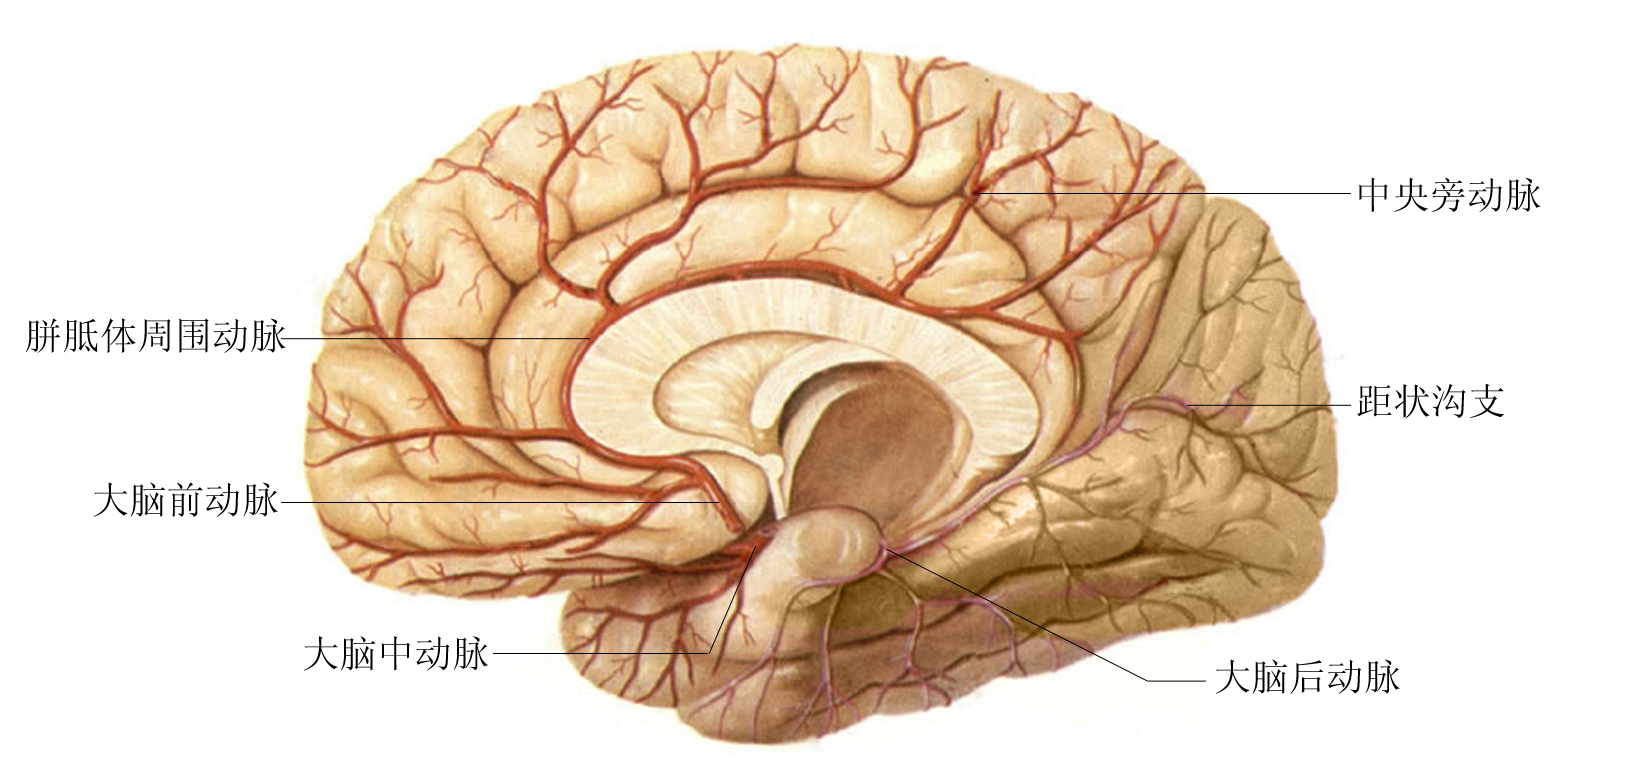 图5-1-59 嗅脑与边缘系统示意图-人体解剖学与组织生理病理学-医学